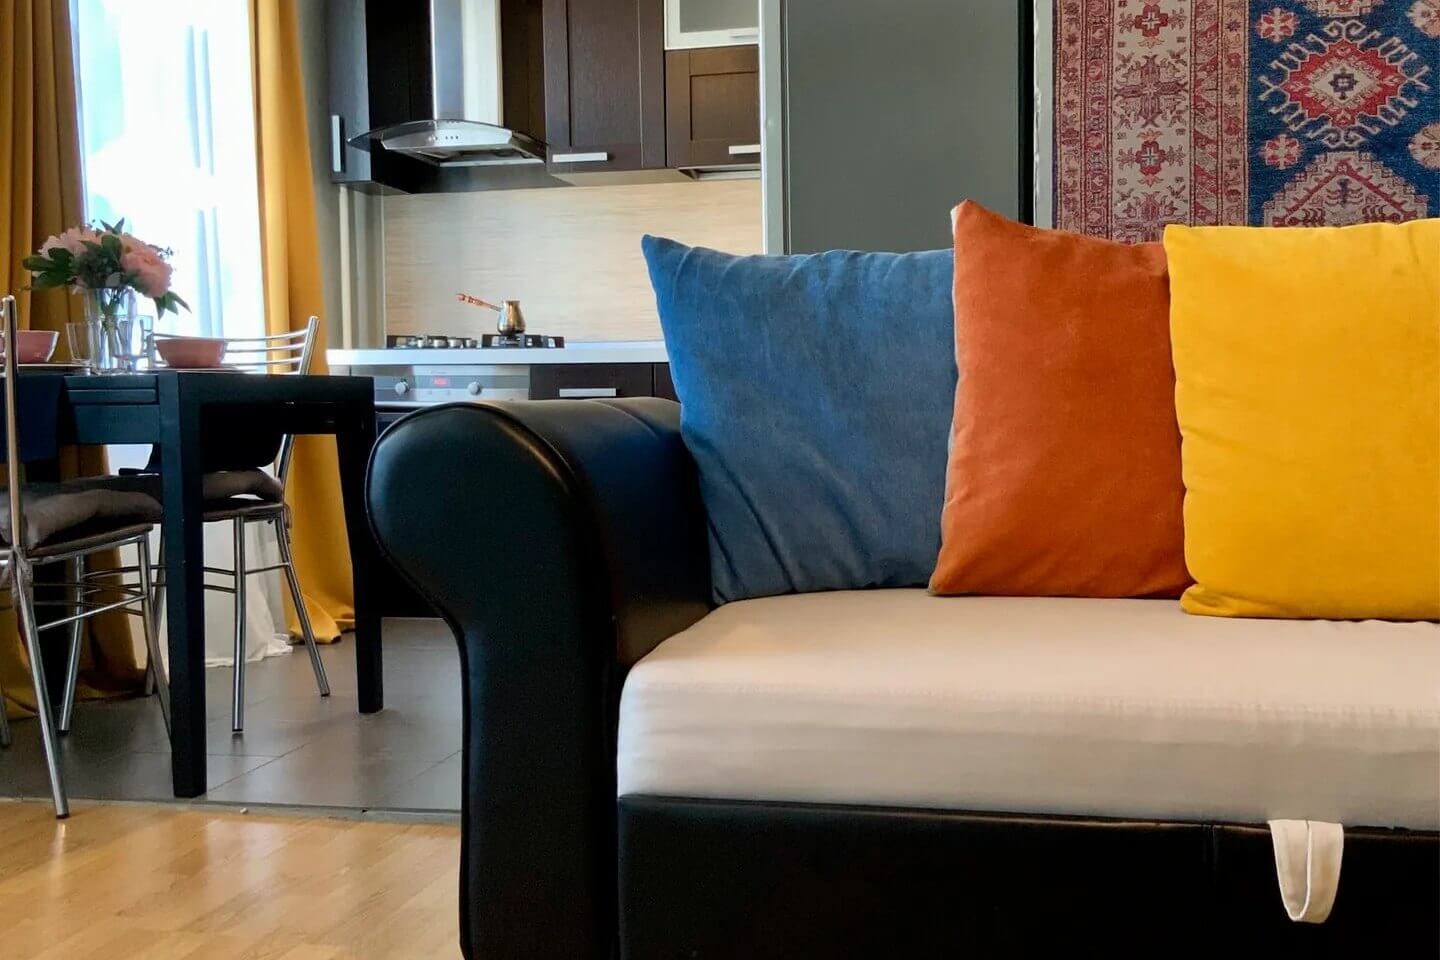 Центральный диван декорирован цветными подушками: синей, красной и желтой.